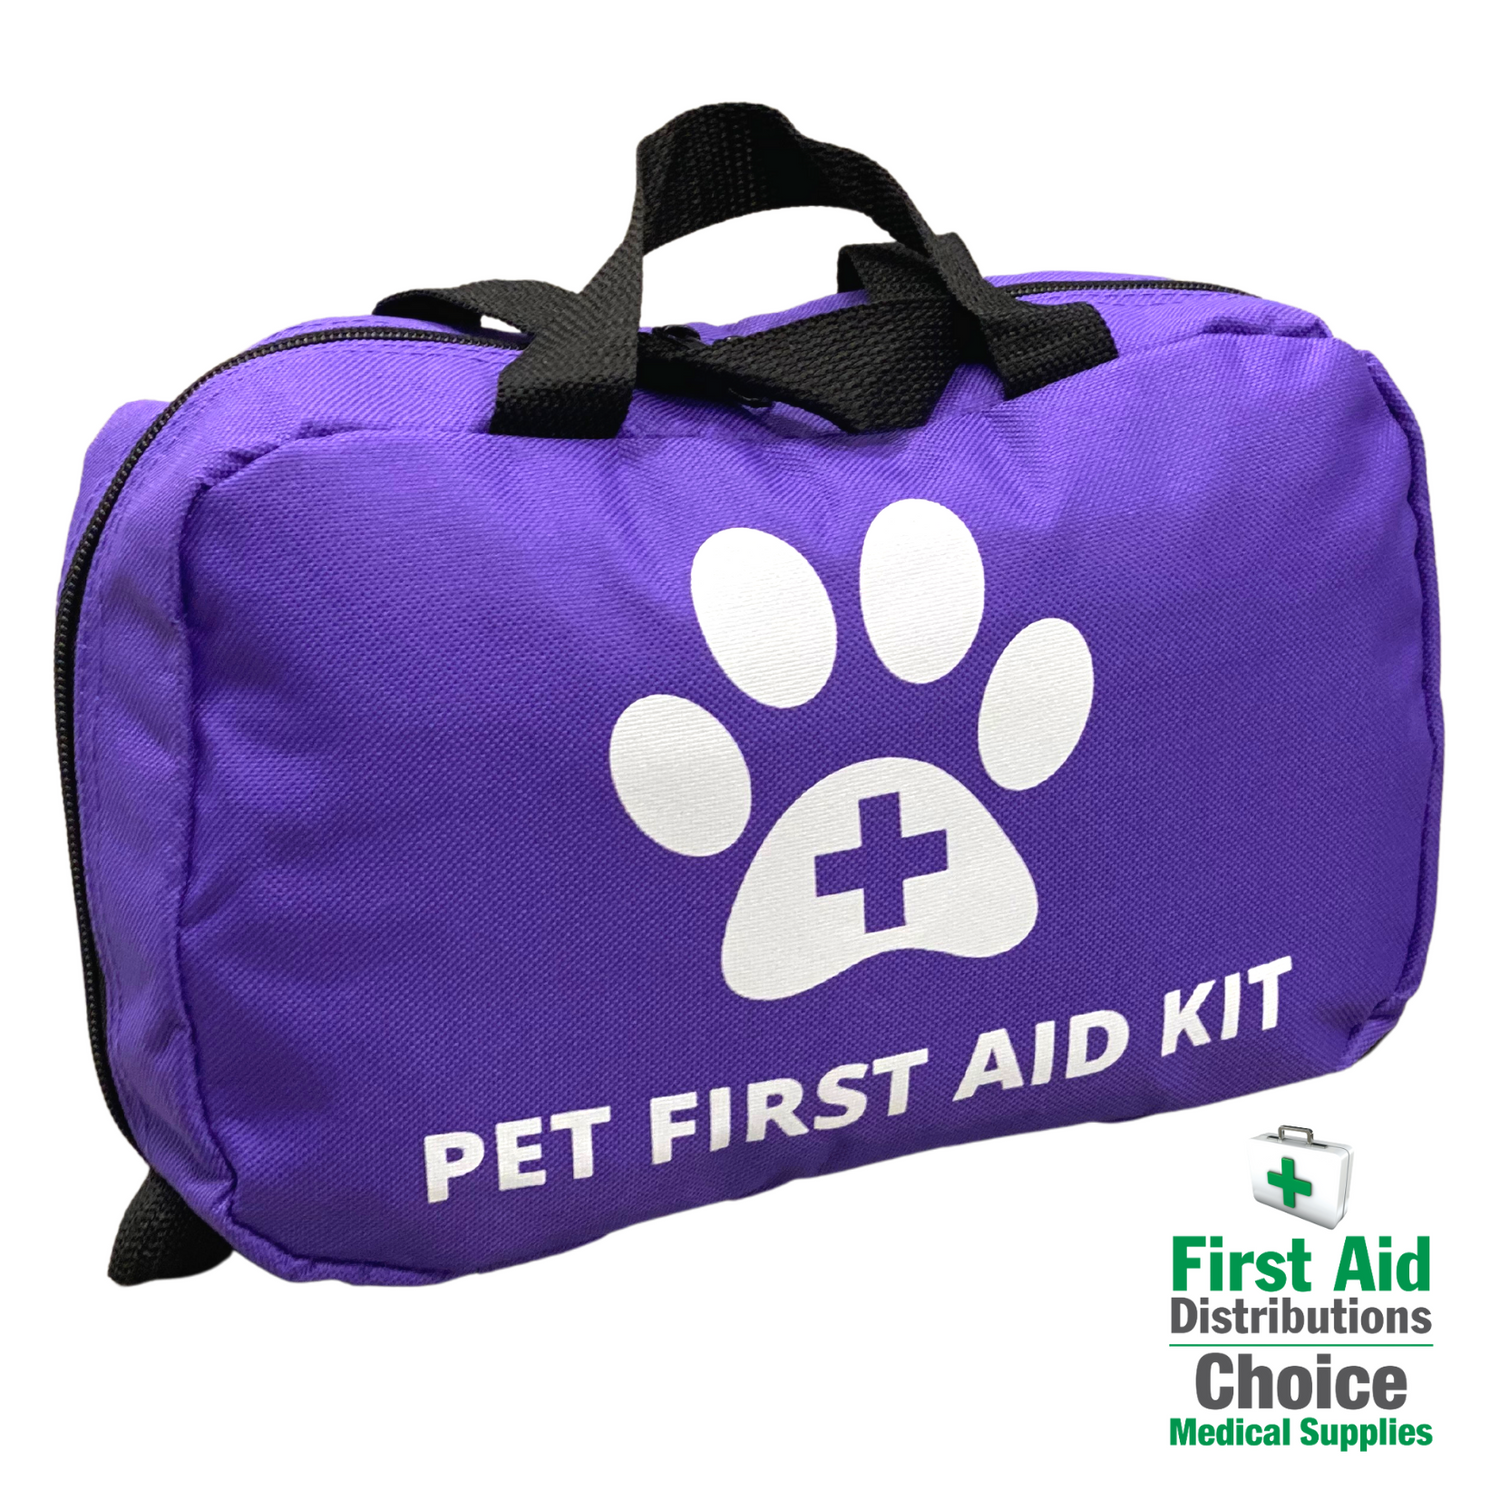 First Aid Kits - Pet